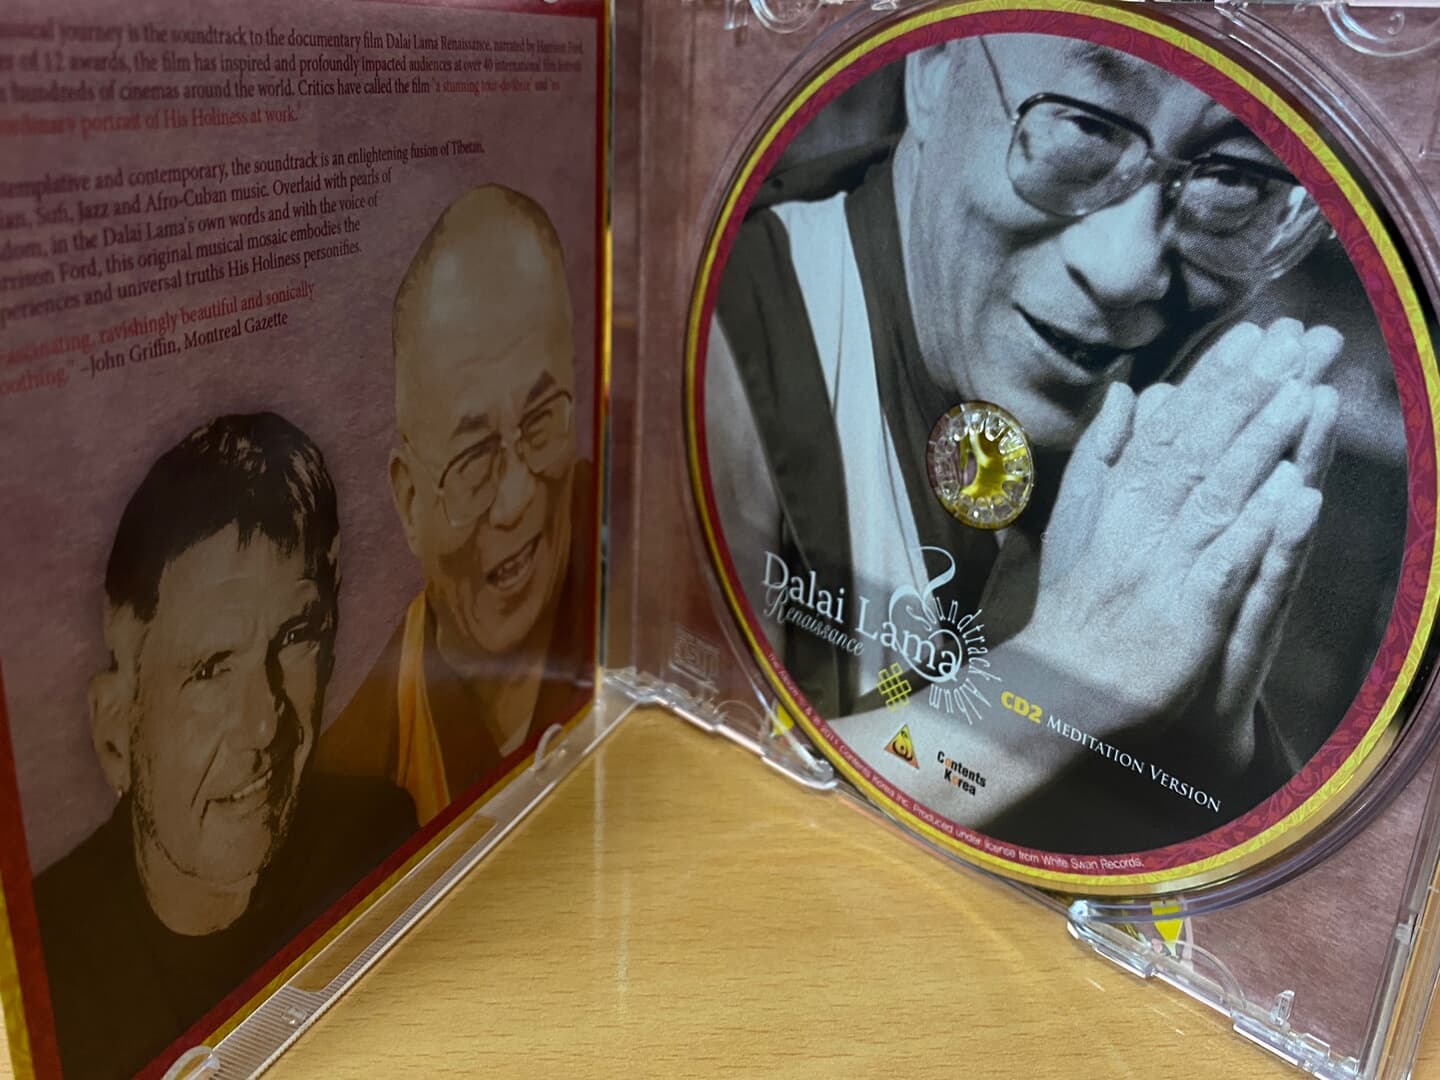 달라이 라마 르네상스 - Dalai Lama Renaissance OST 2Cds [1CD OST+1CD 명상음악]